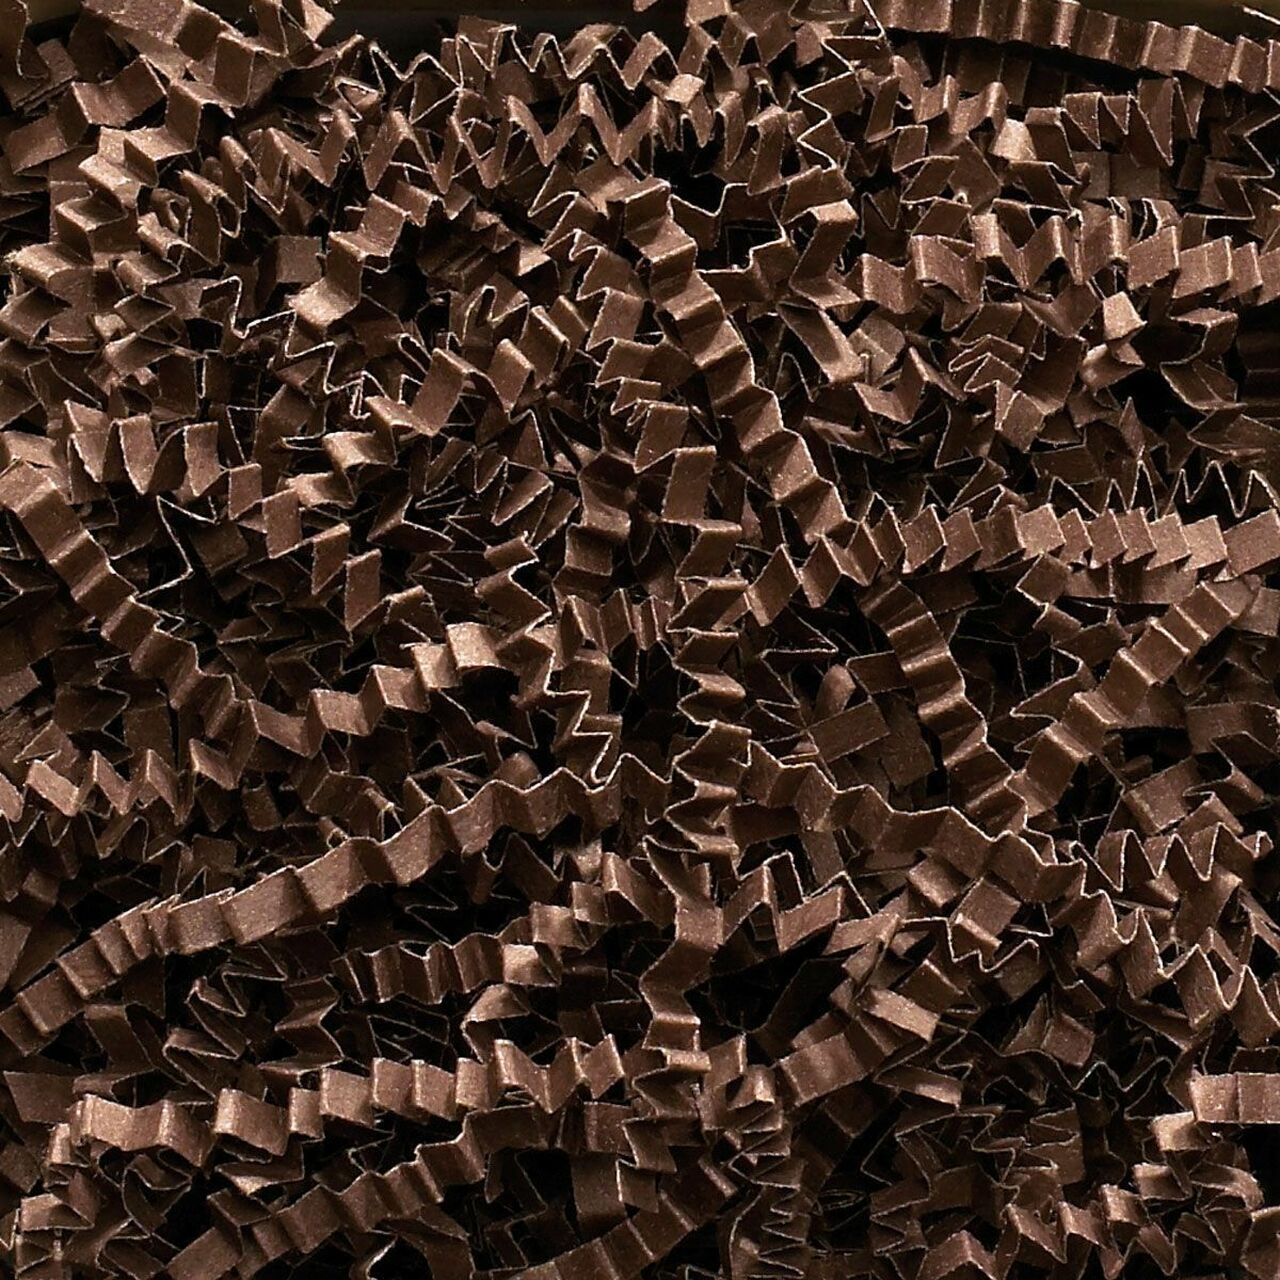 SizzlePak Shredded paper - Chocolate (1KG)